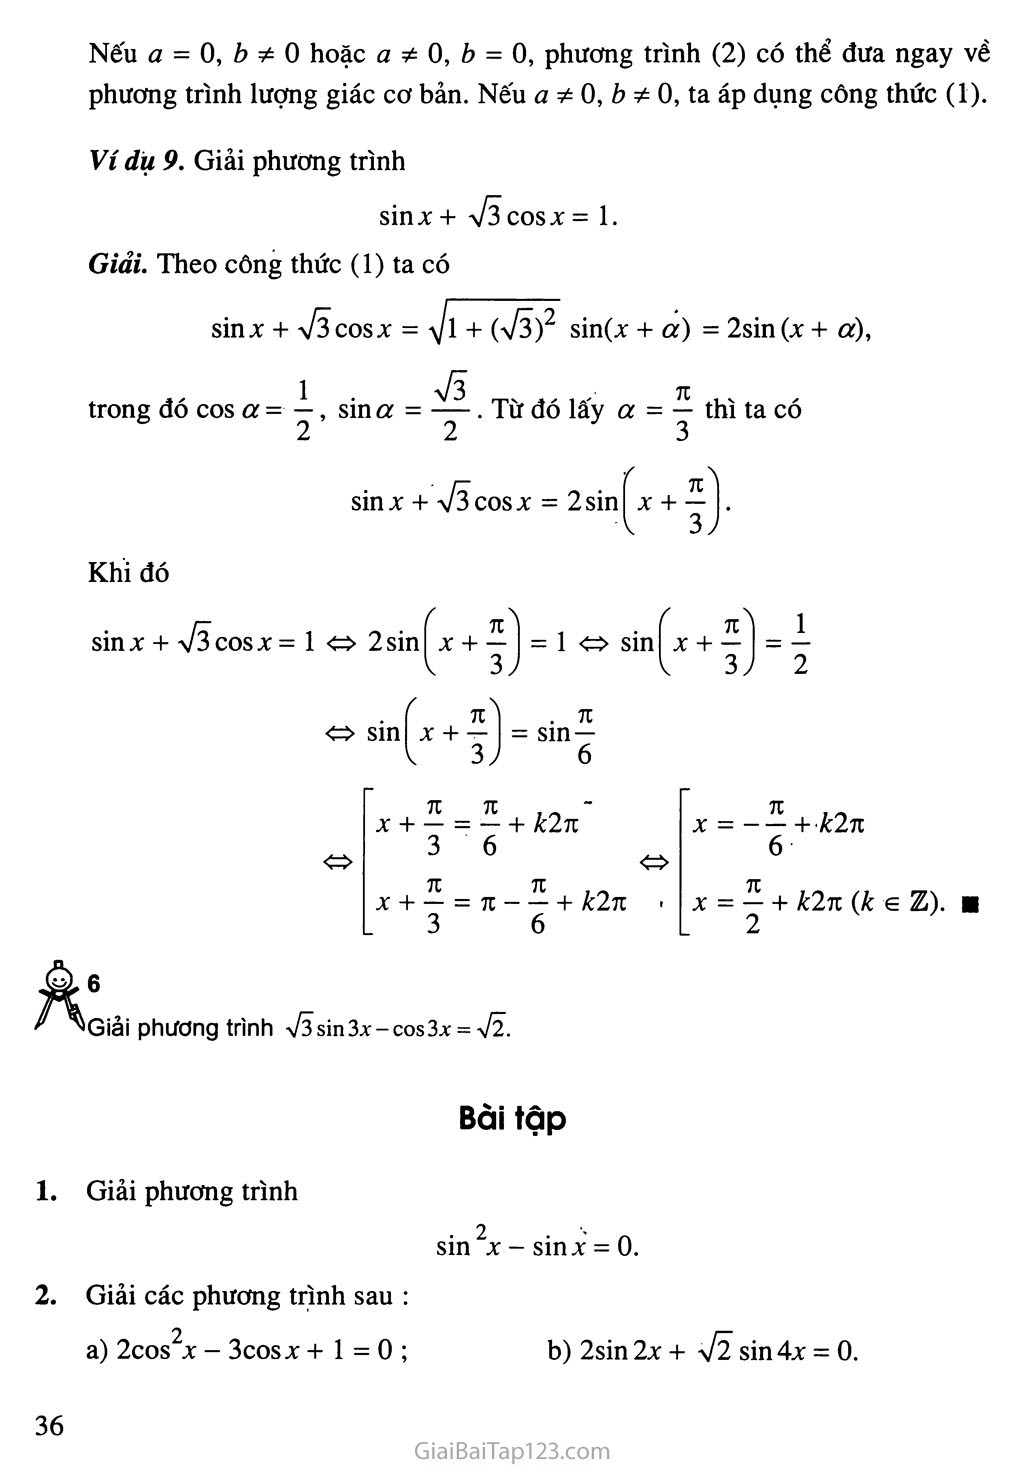 Bài 3. Một số phương trình lượng giác thường gặp trang 8